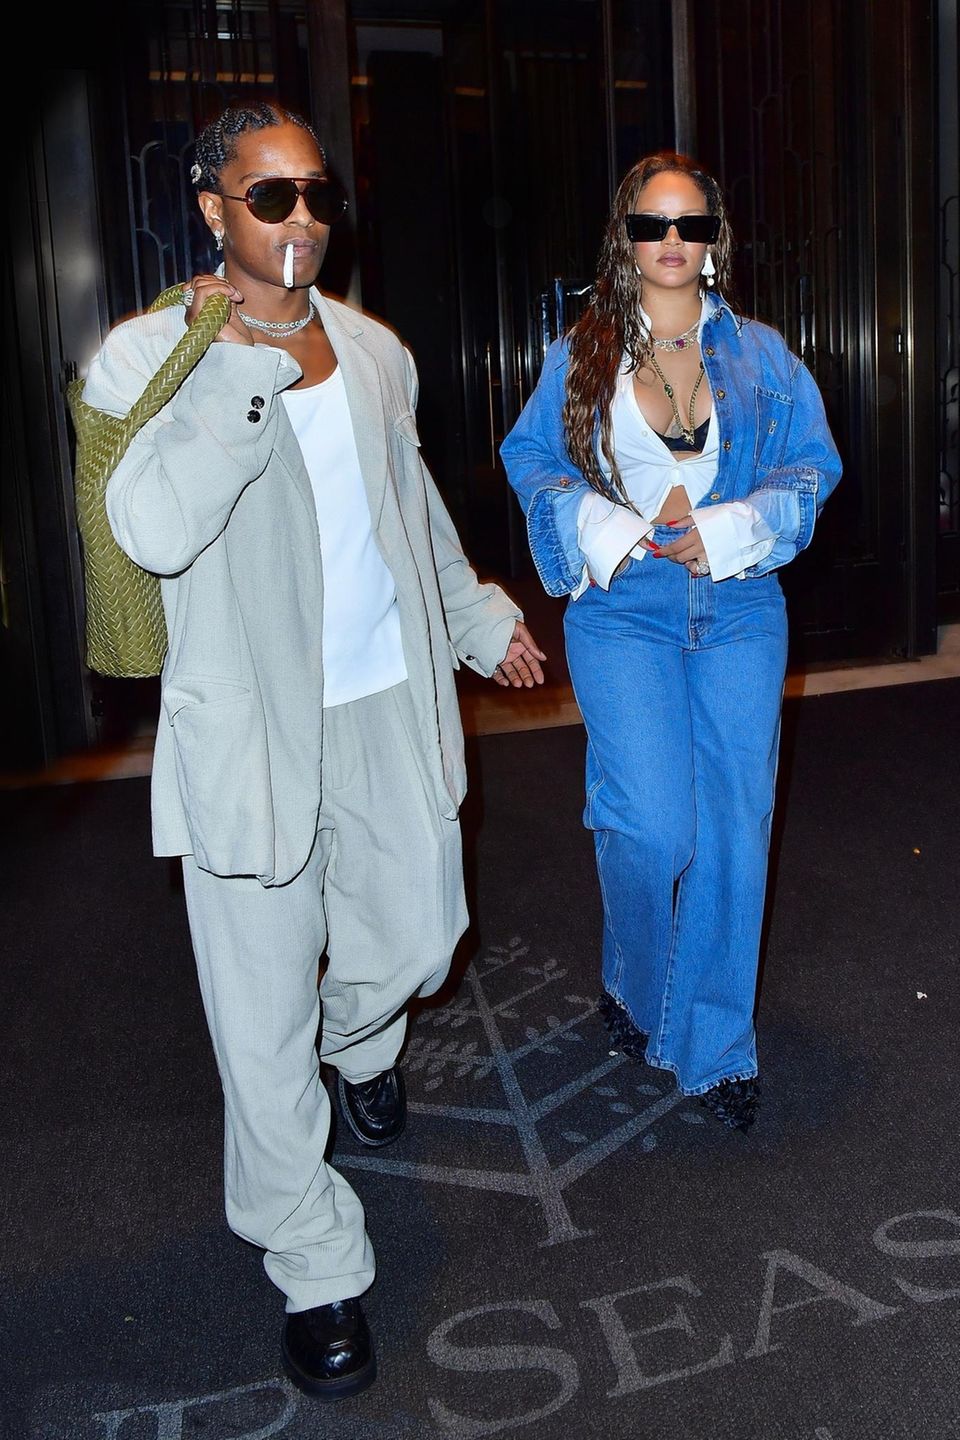 Der Geburtstagsmarathon von A$AP Rocky geht weiter! Diesmal wurden A$AP und Rihanna auf dem Weg zu einem privaten Event in New Jersey gesichtet. Gewohnt stylisch und super lässig zeigt sich das Paar am Abend der Party. Während A$AP Rocky im hellbraunen Jersey-Anzug herausgeputzt hat, setzt Rihanna auf Double-Denim mit gecroppter Bluse.